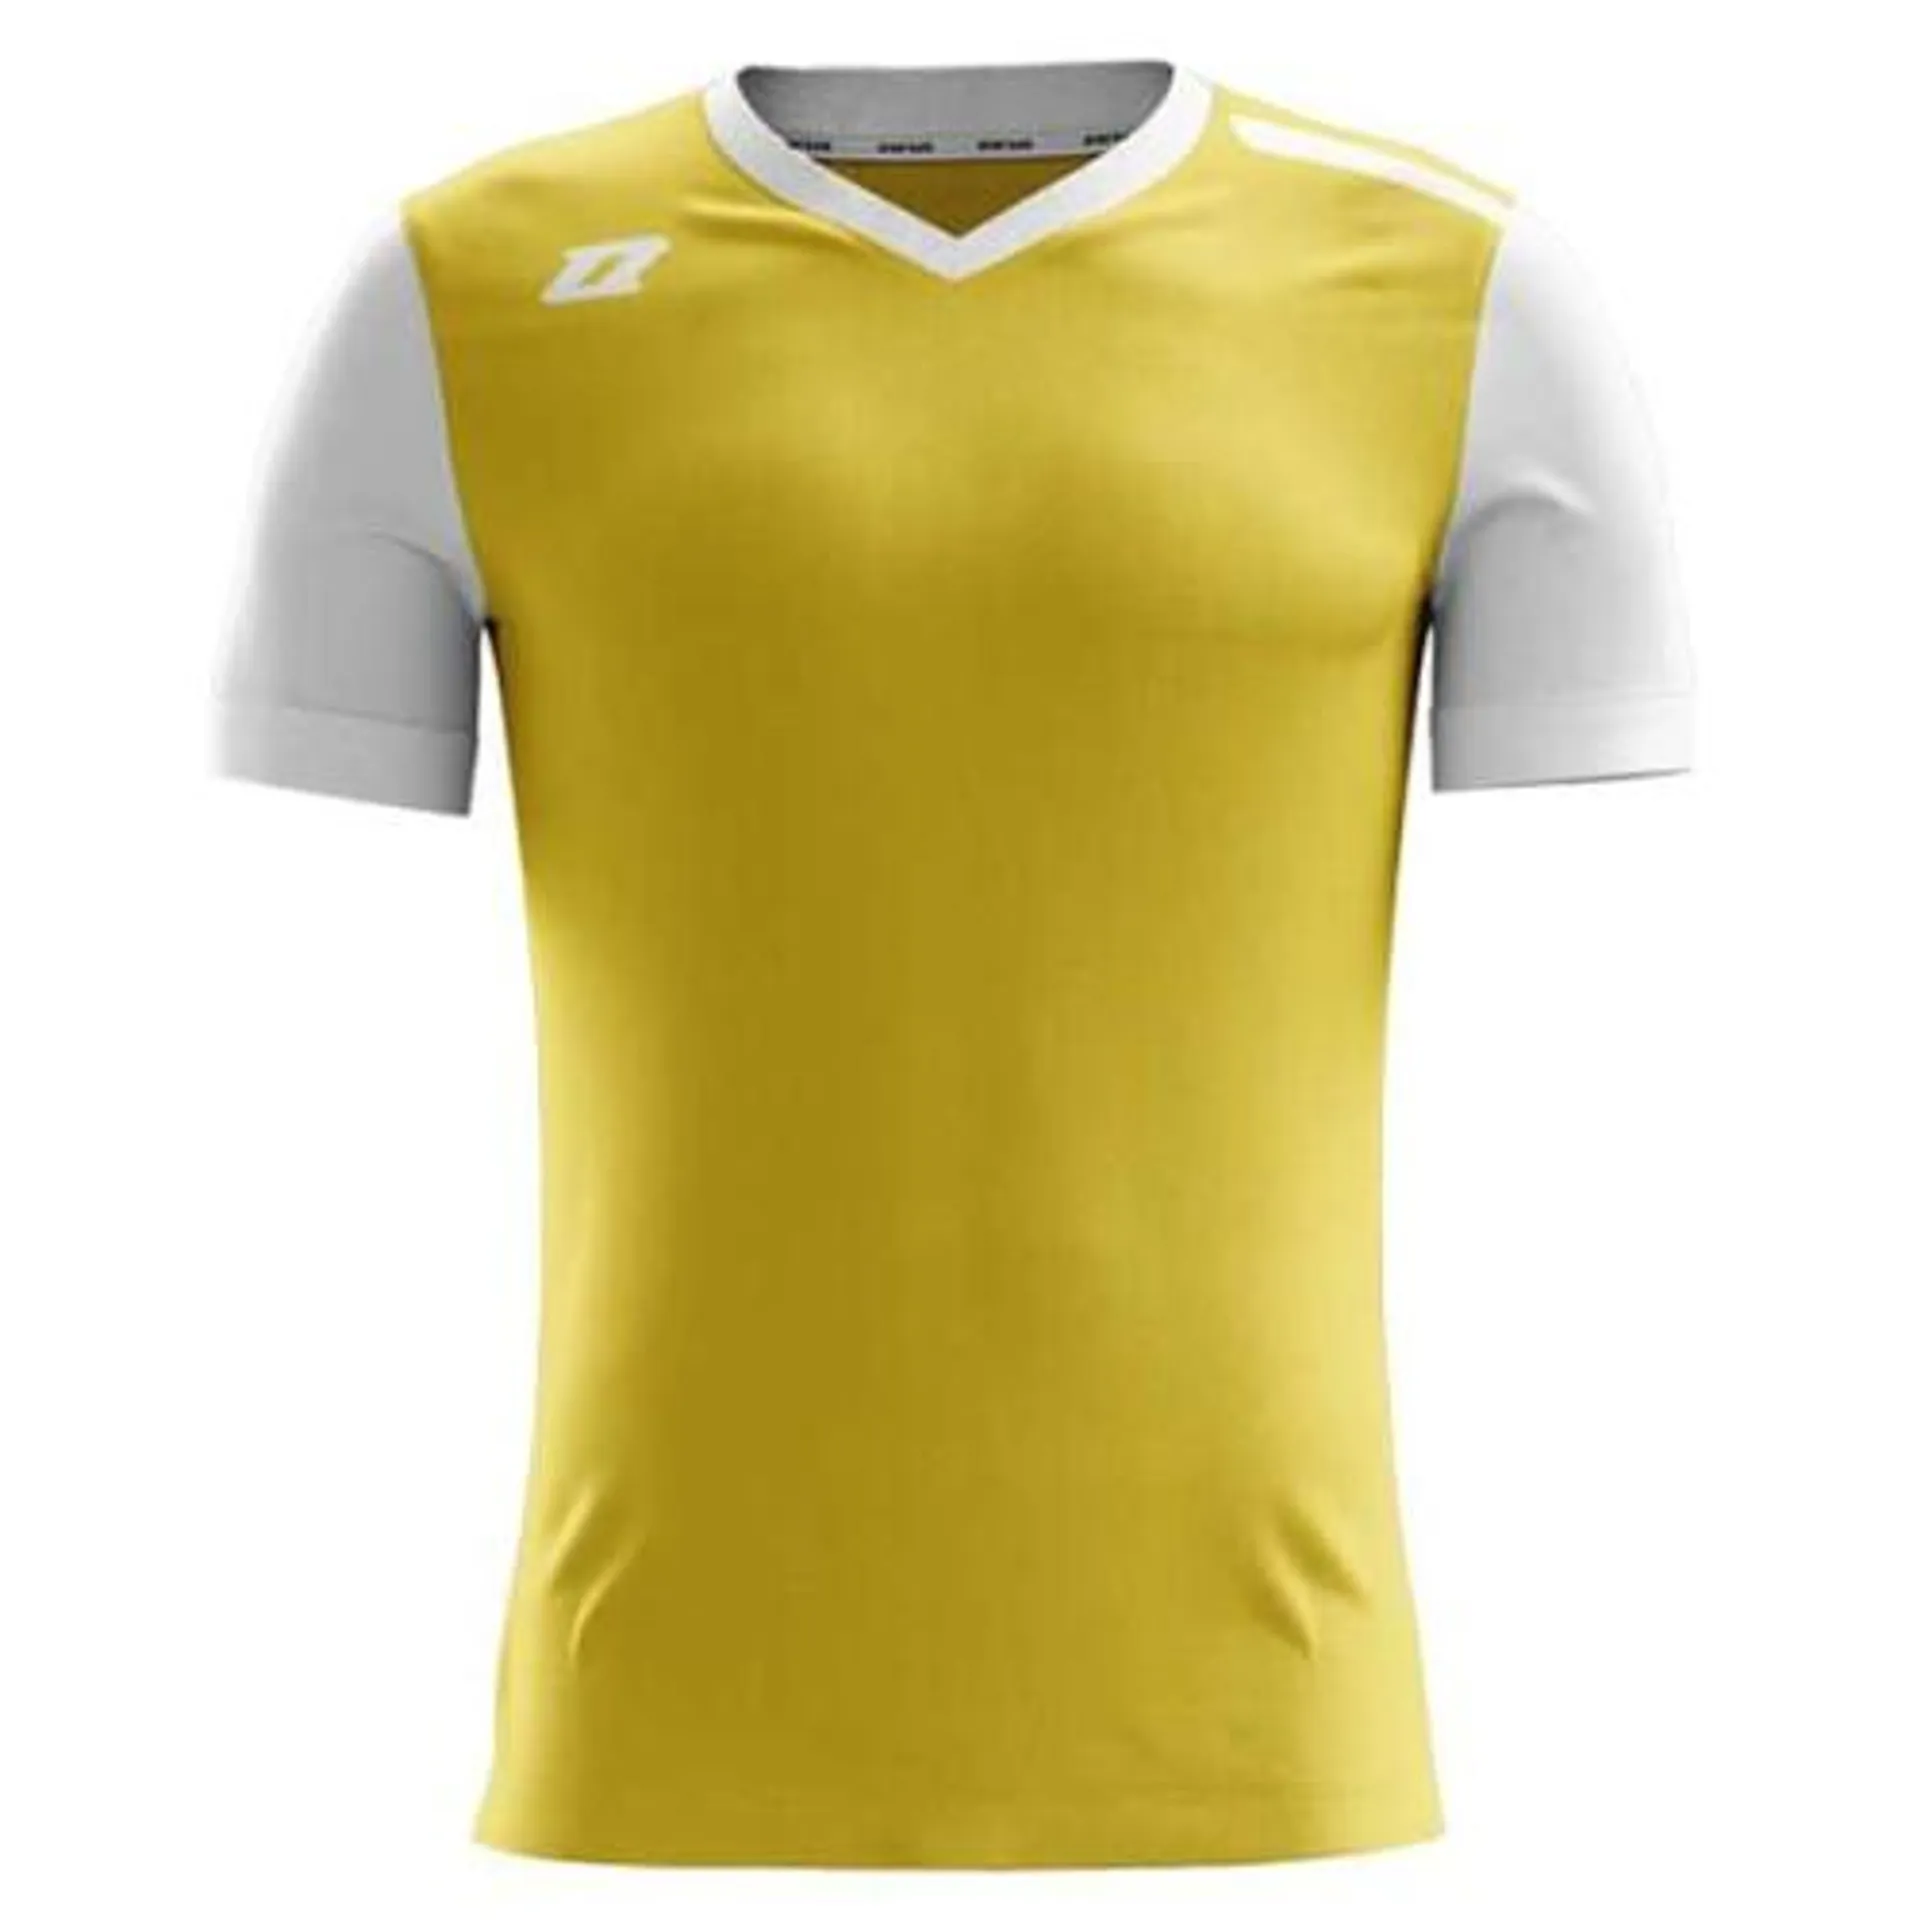 Juniorska koszulka piłkarska – ZINA Liga